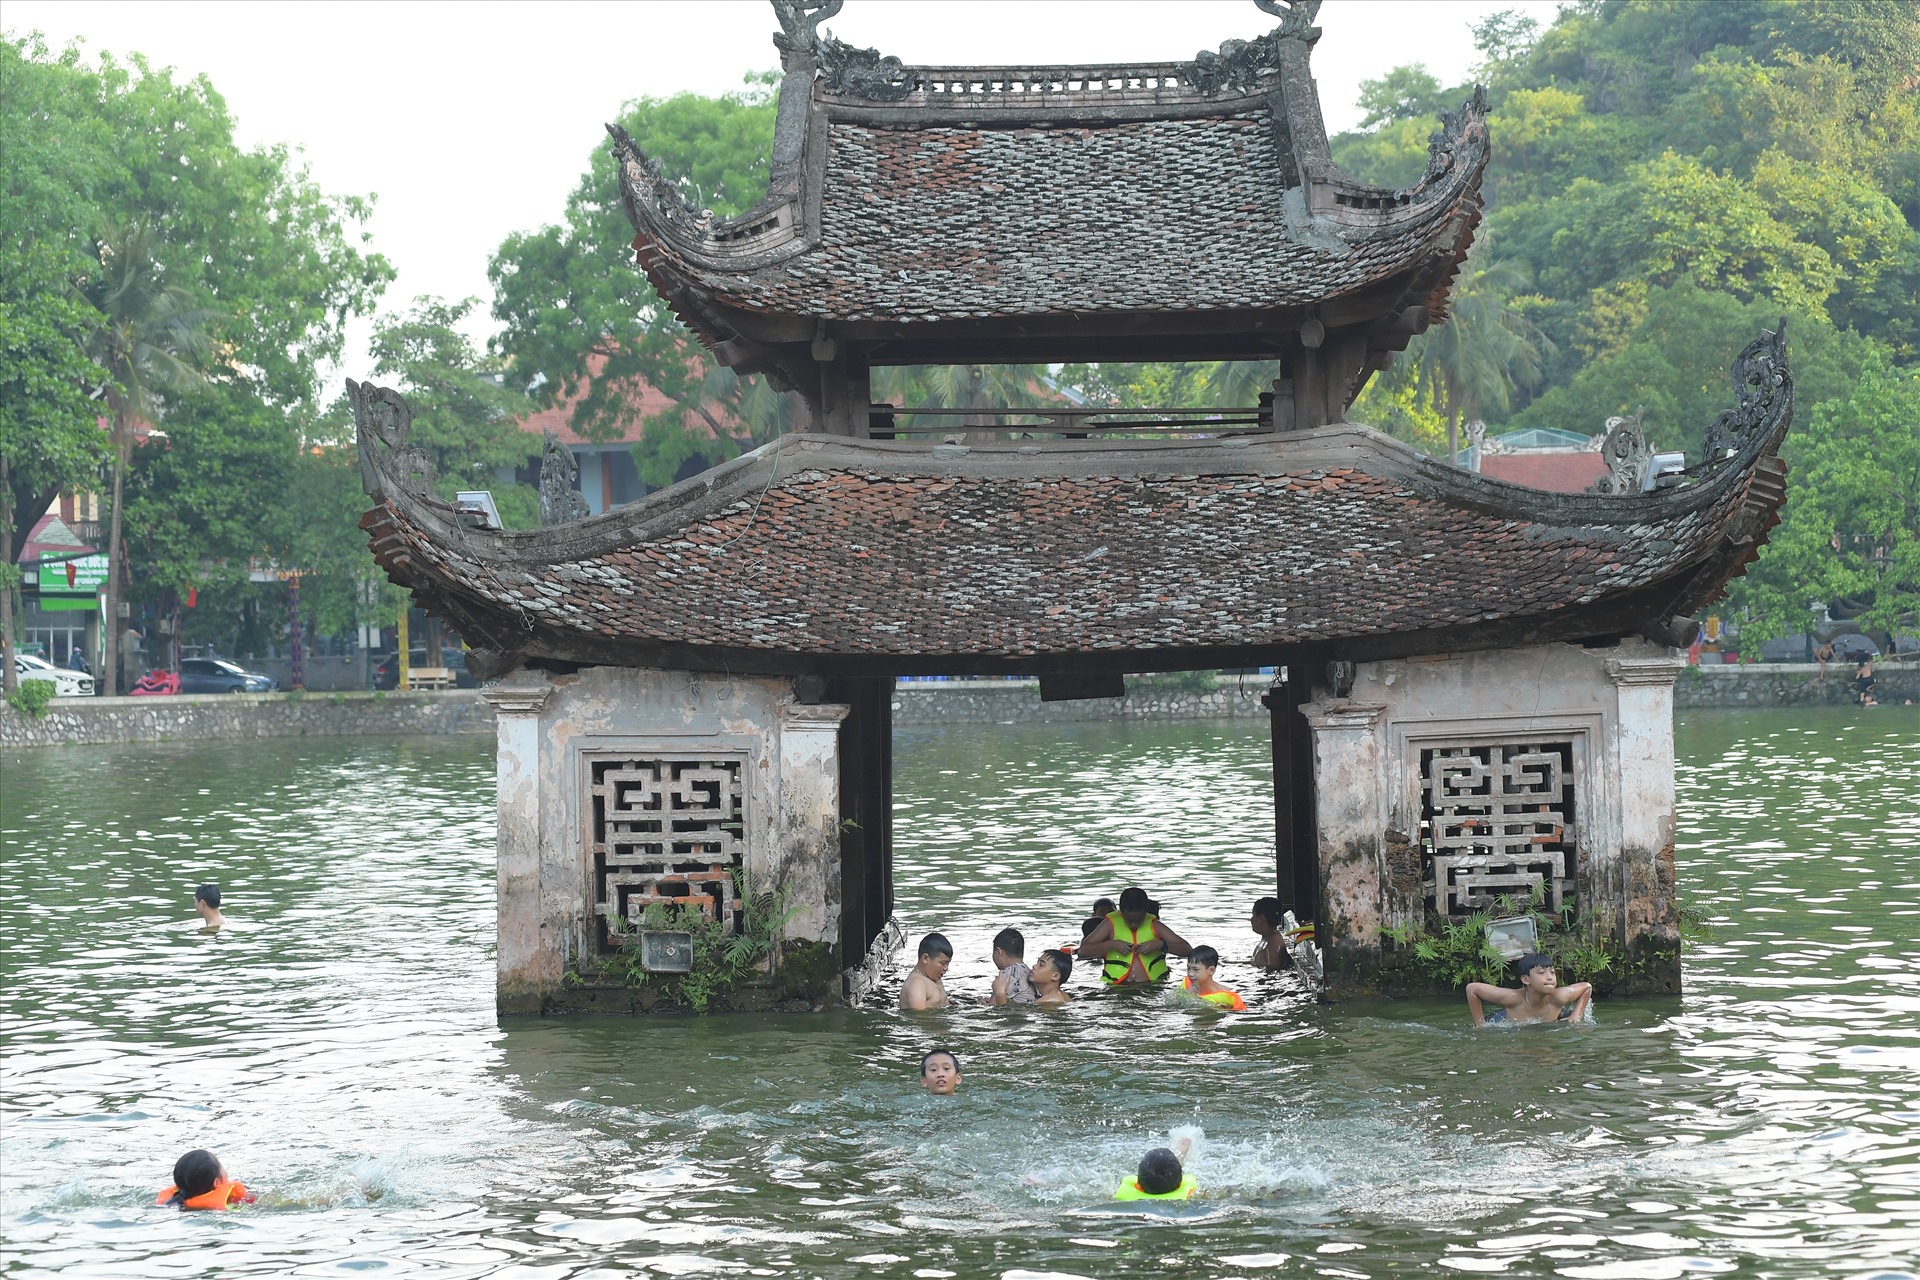 Hồ Long Trì có từ thời nhà Lý, người dân từng trồng sen trong hồ nhưng đến nay đã bỏ để mọi người có thể đến vui chơi, tắm mát.